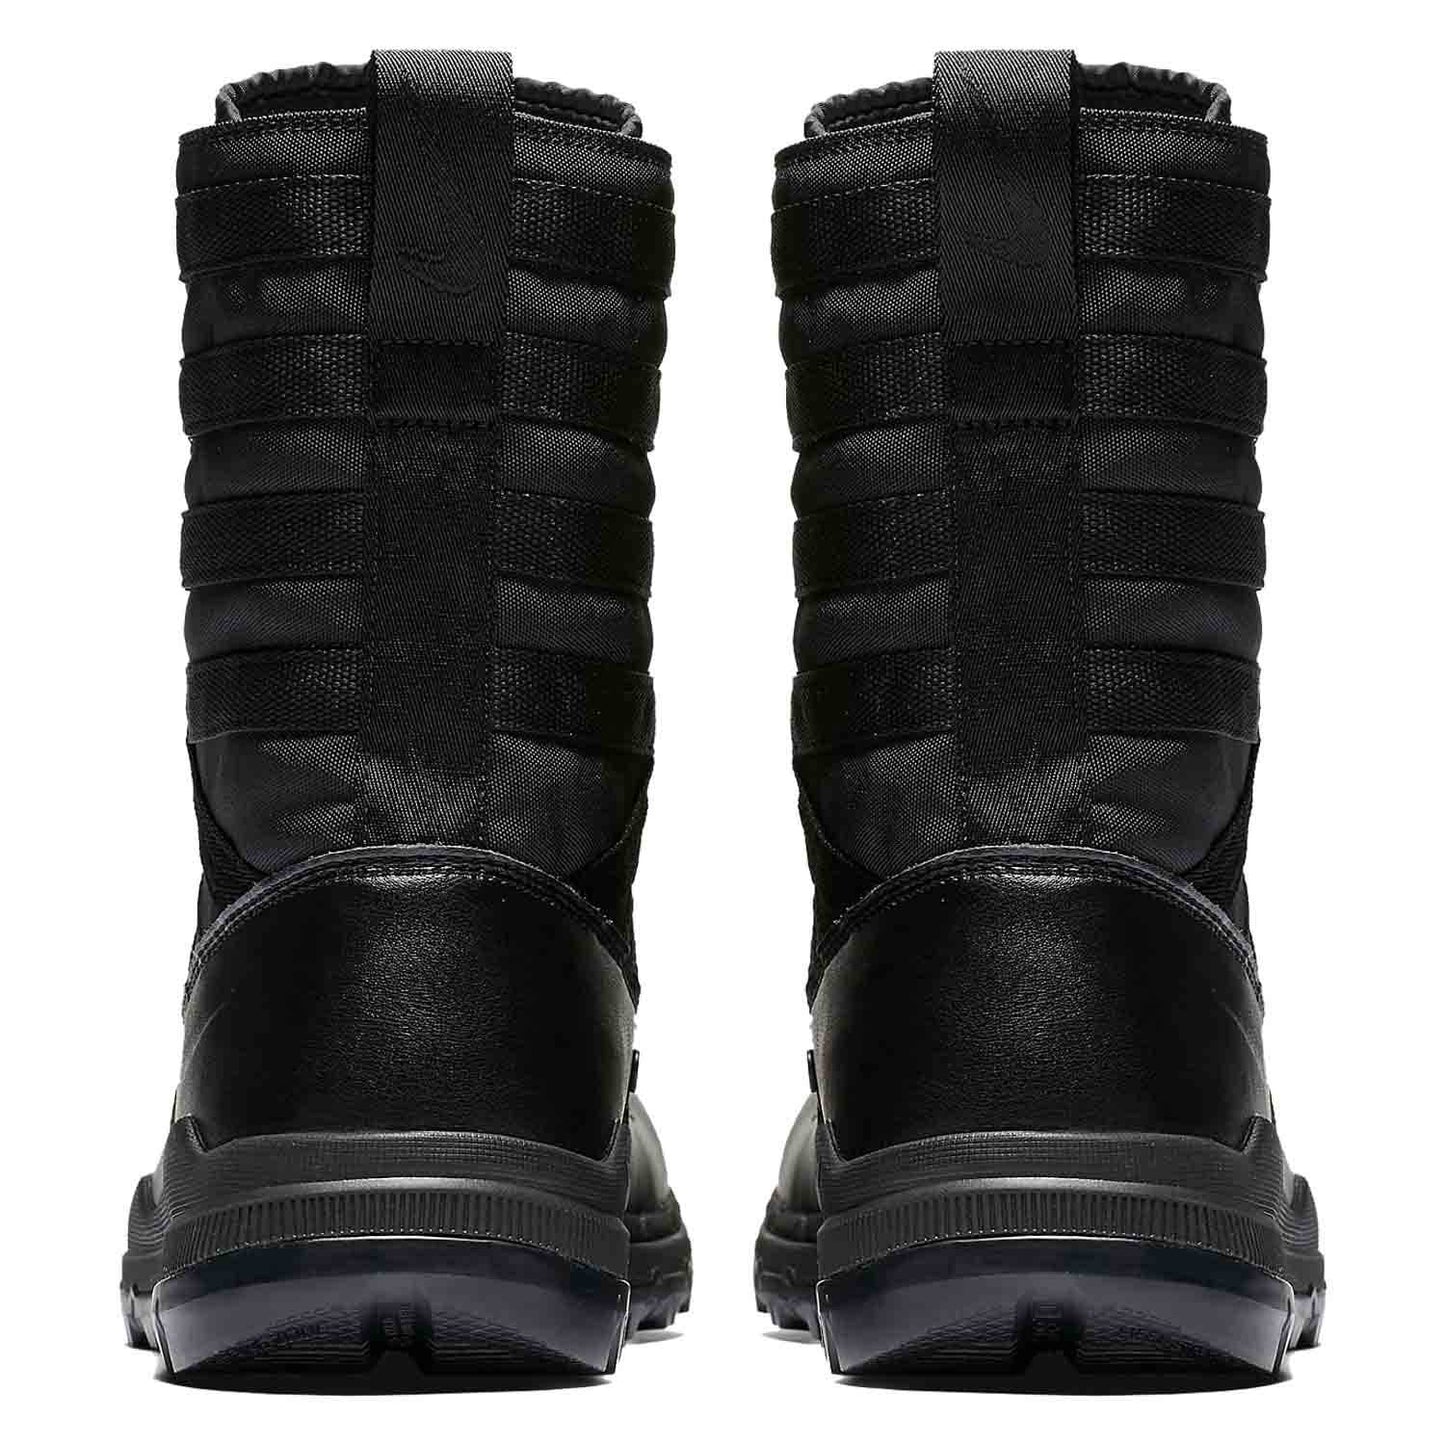 NIKE SFB GEN 2 8" Black Tactical Boots